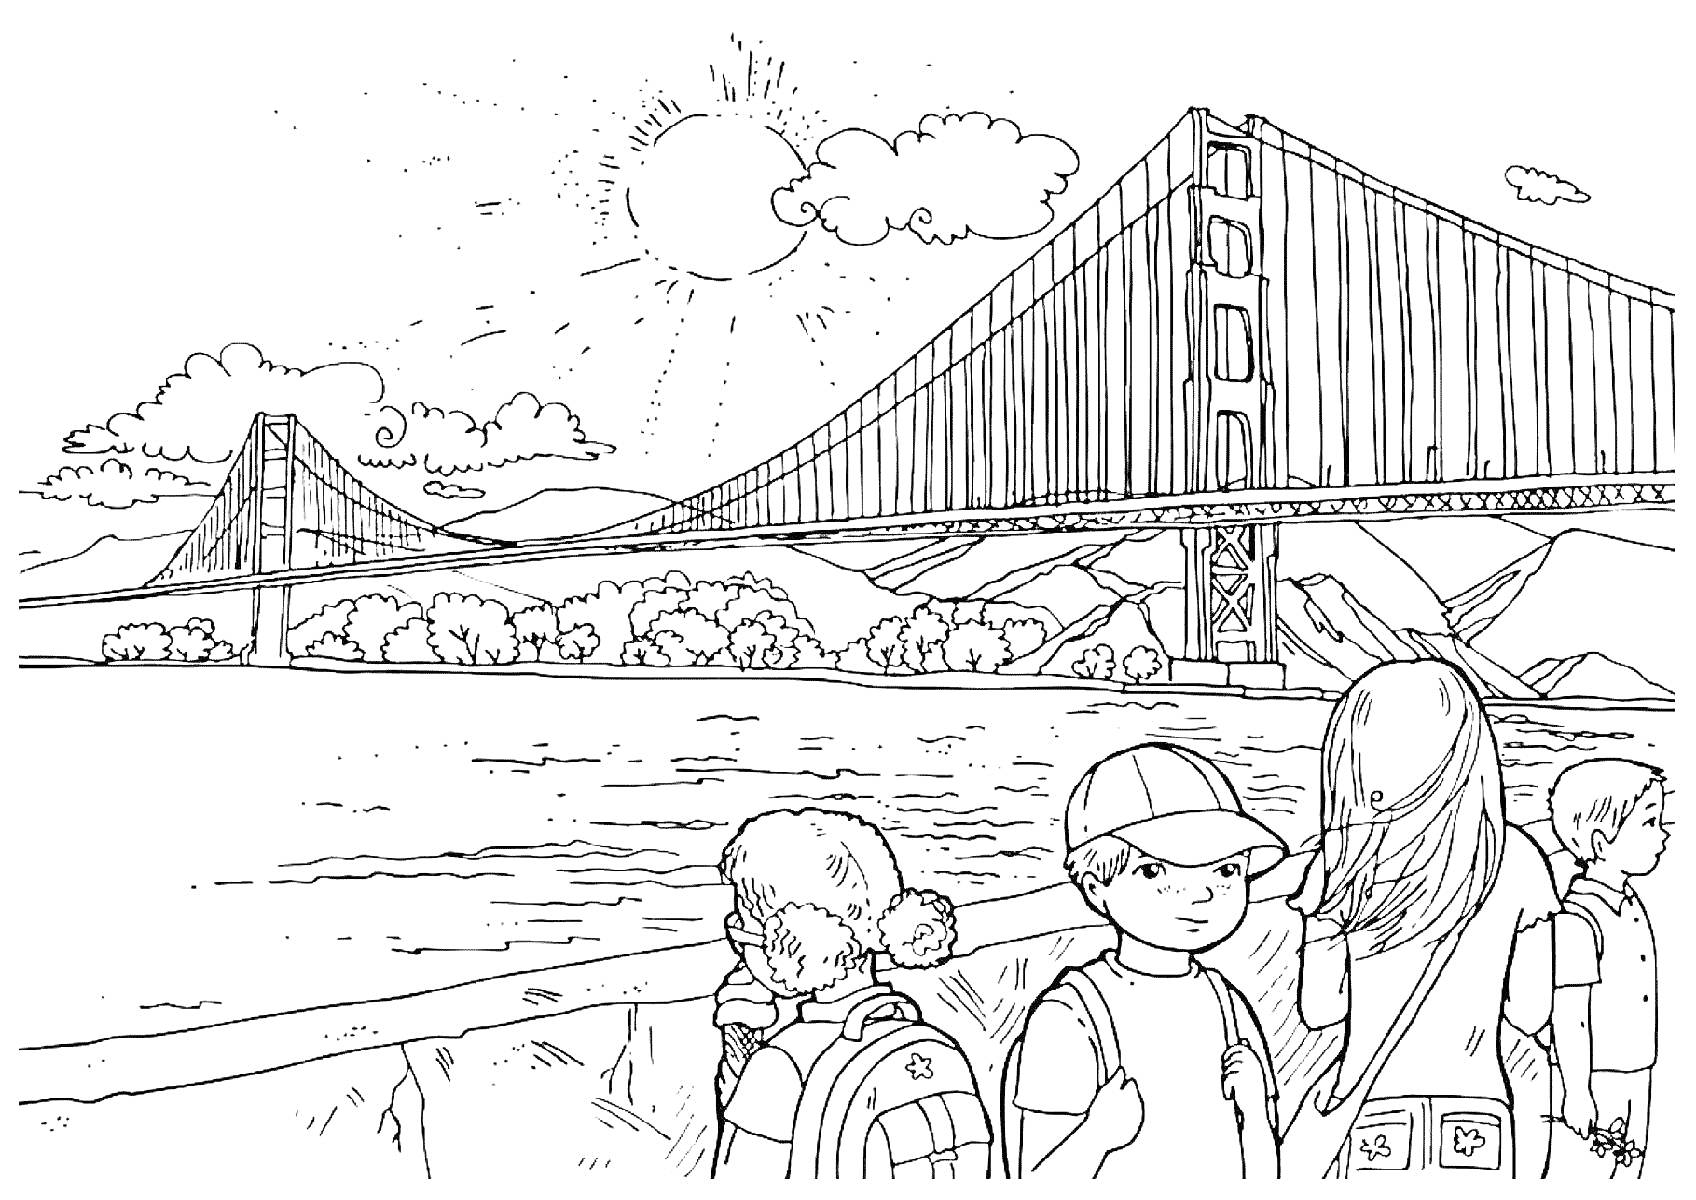 Дети на прогулке возле подвесного моста, холмы, река, солнце и облака на небе